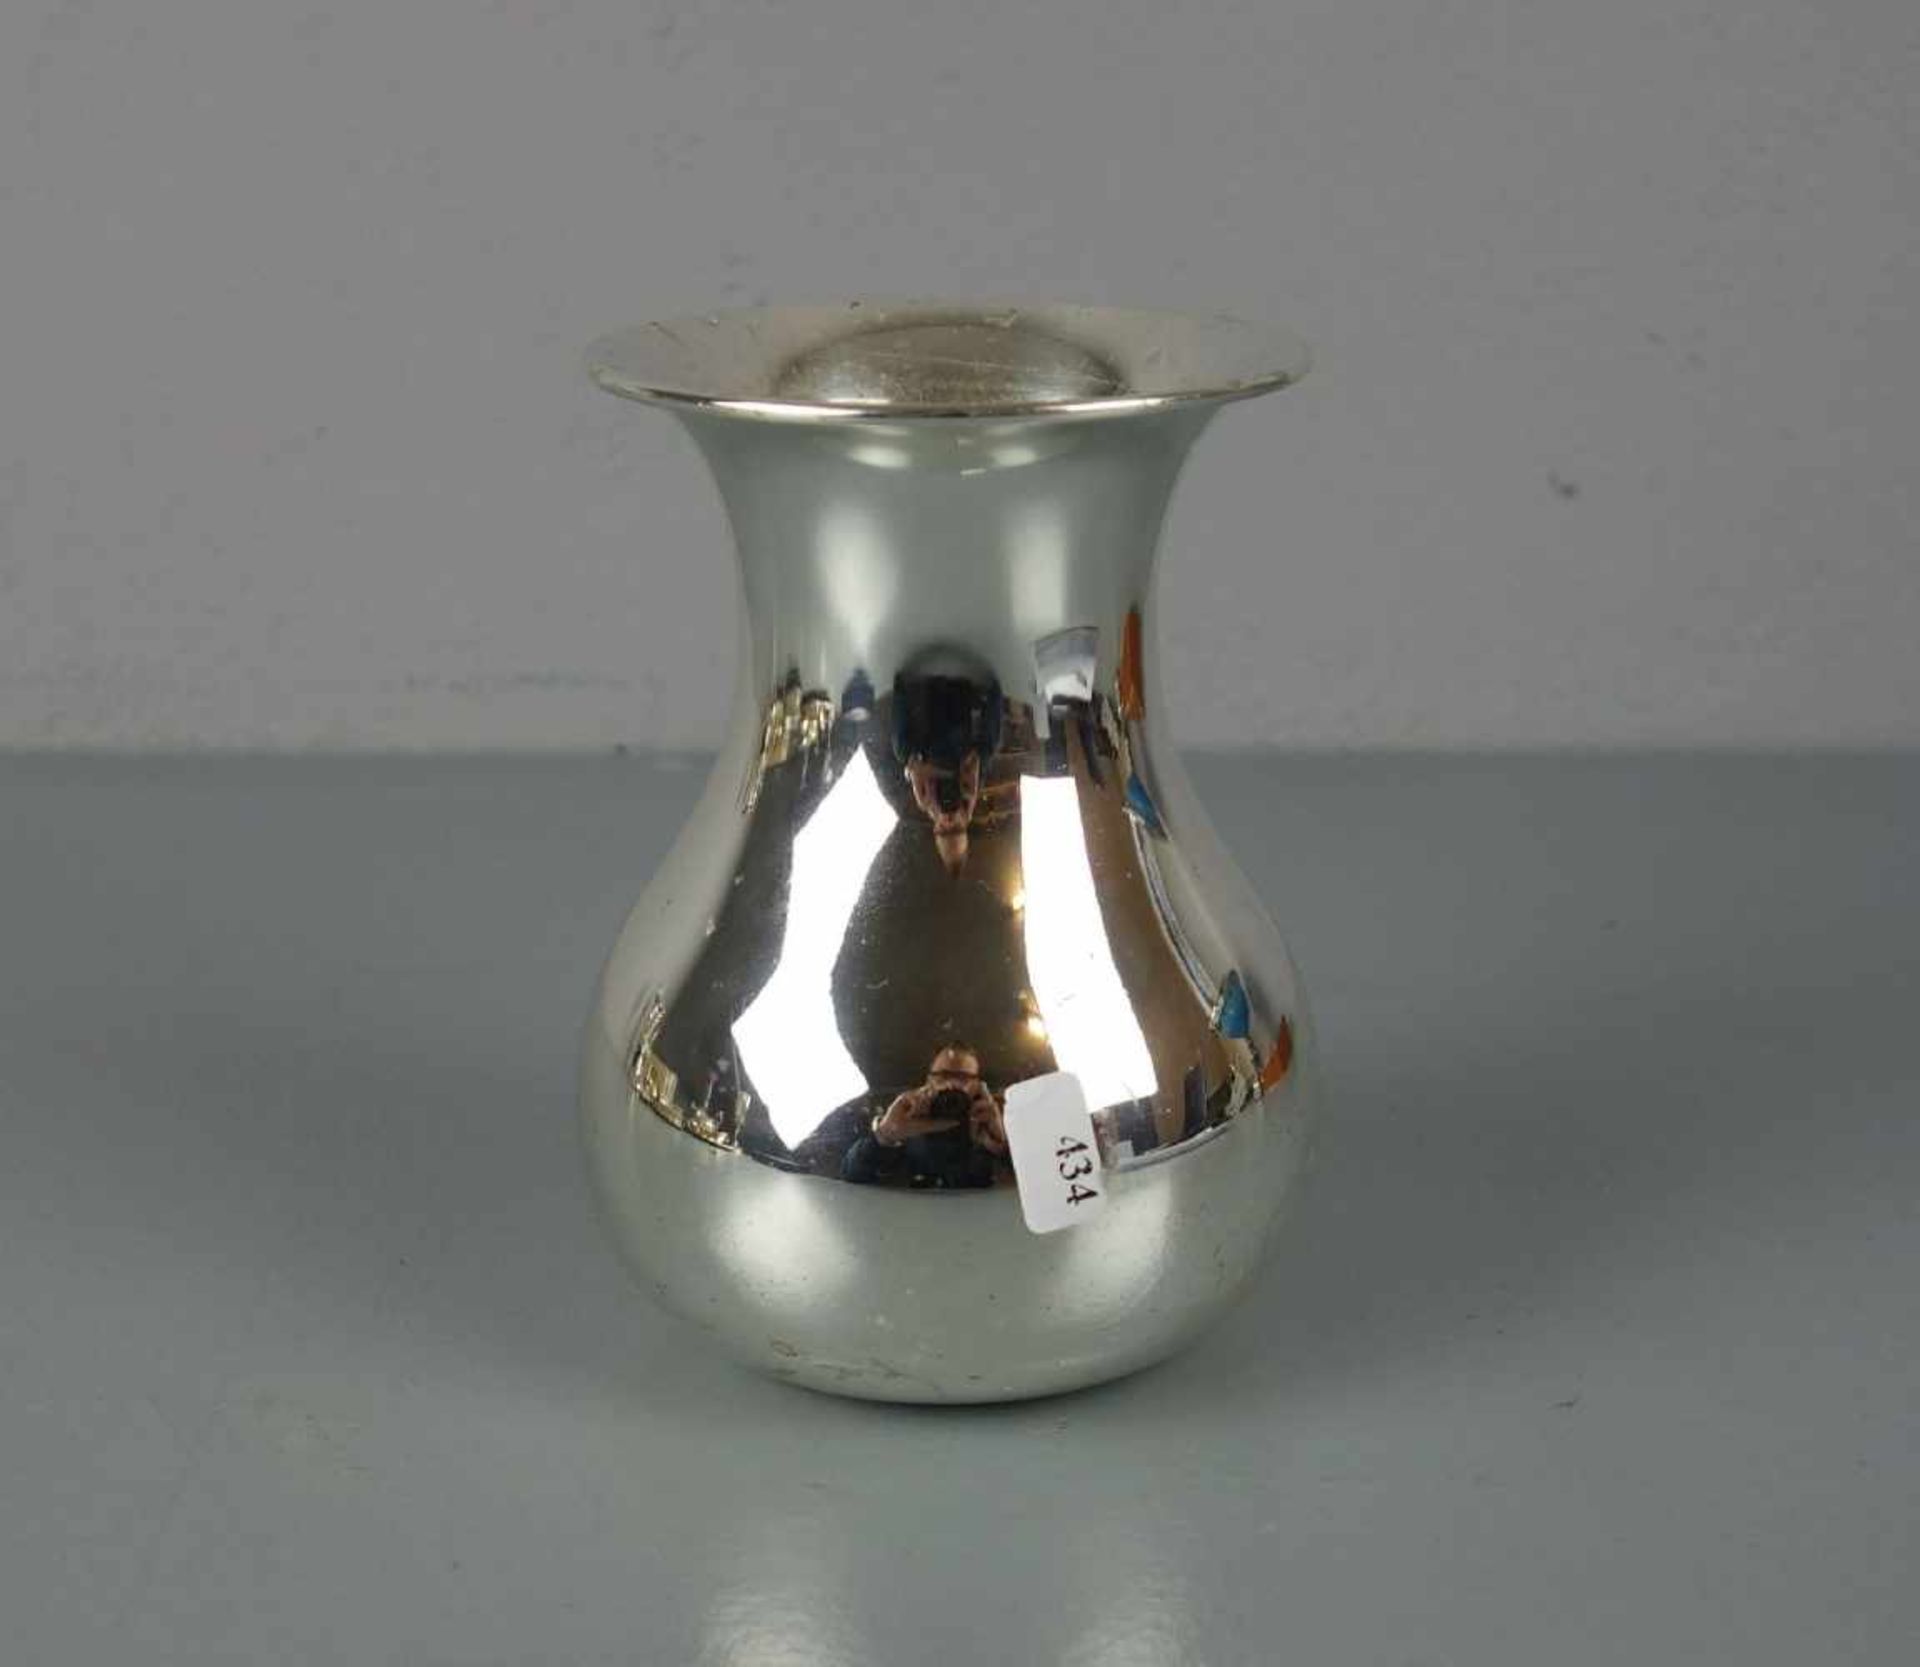 VASE, 925er Silber (250 g), bezeichnet "Sterling" und gepunzt mit Halbmond, Krone, Feingehaltsangabe